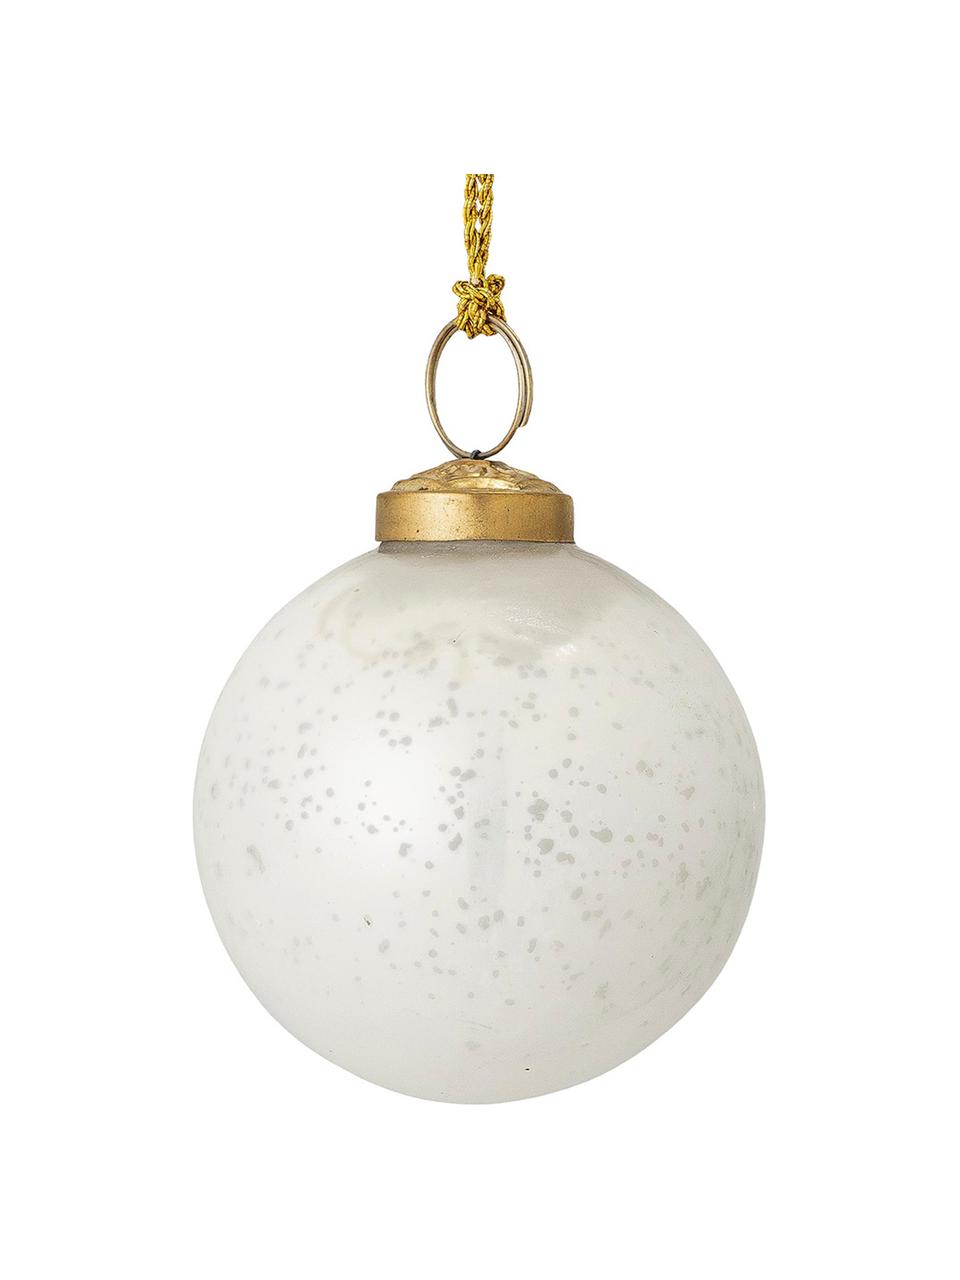 Vánoční ozdoby Munay, 2 ks, Lesklá bílá, zlatá, Ø 8 cm, V 8 cm